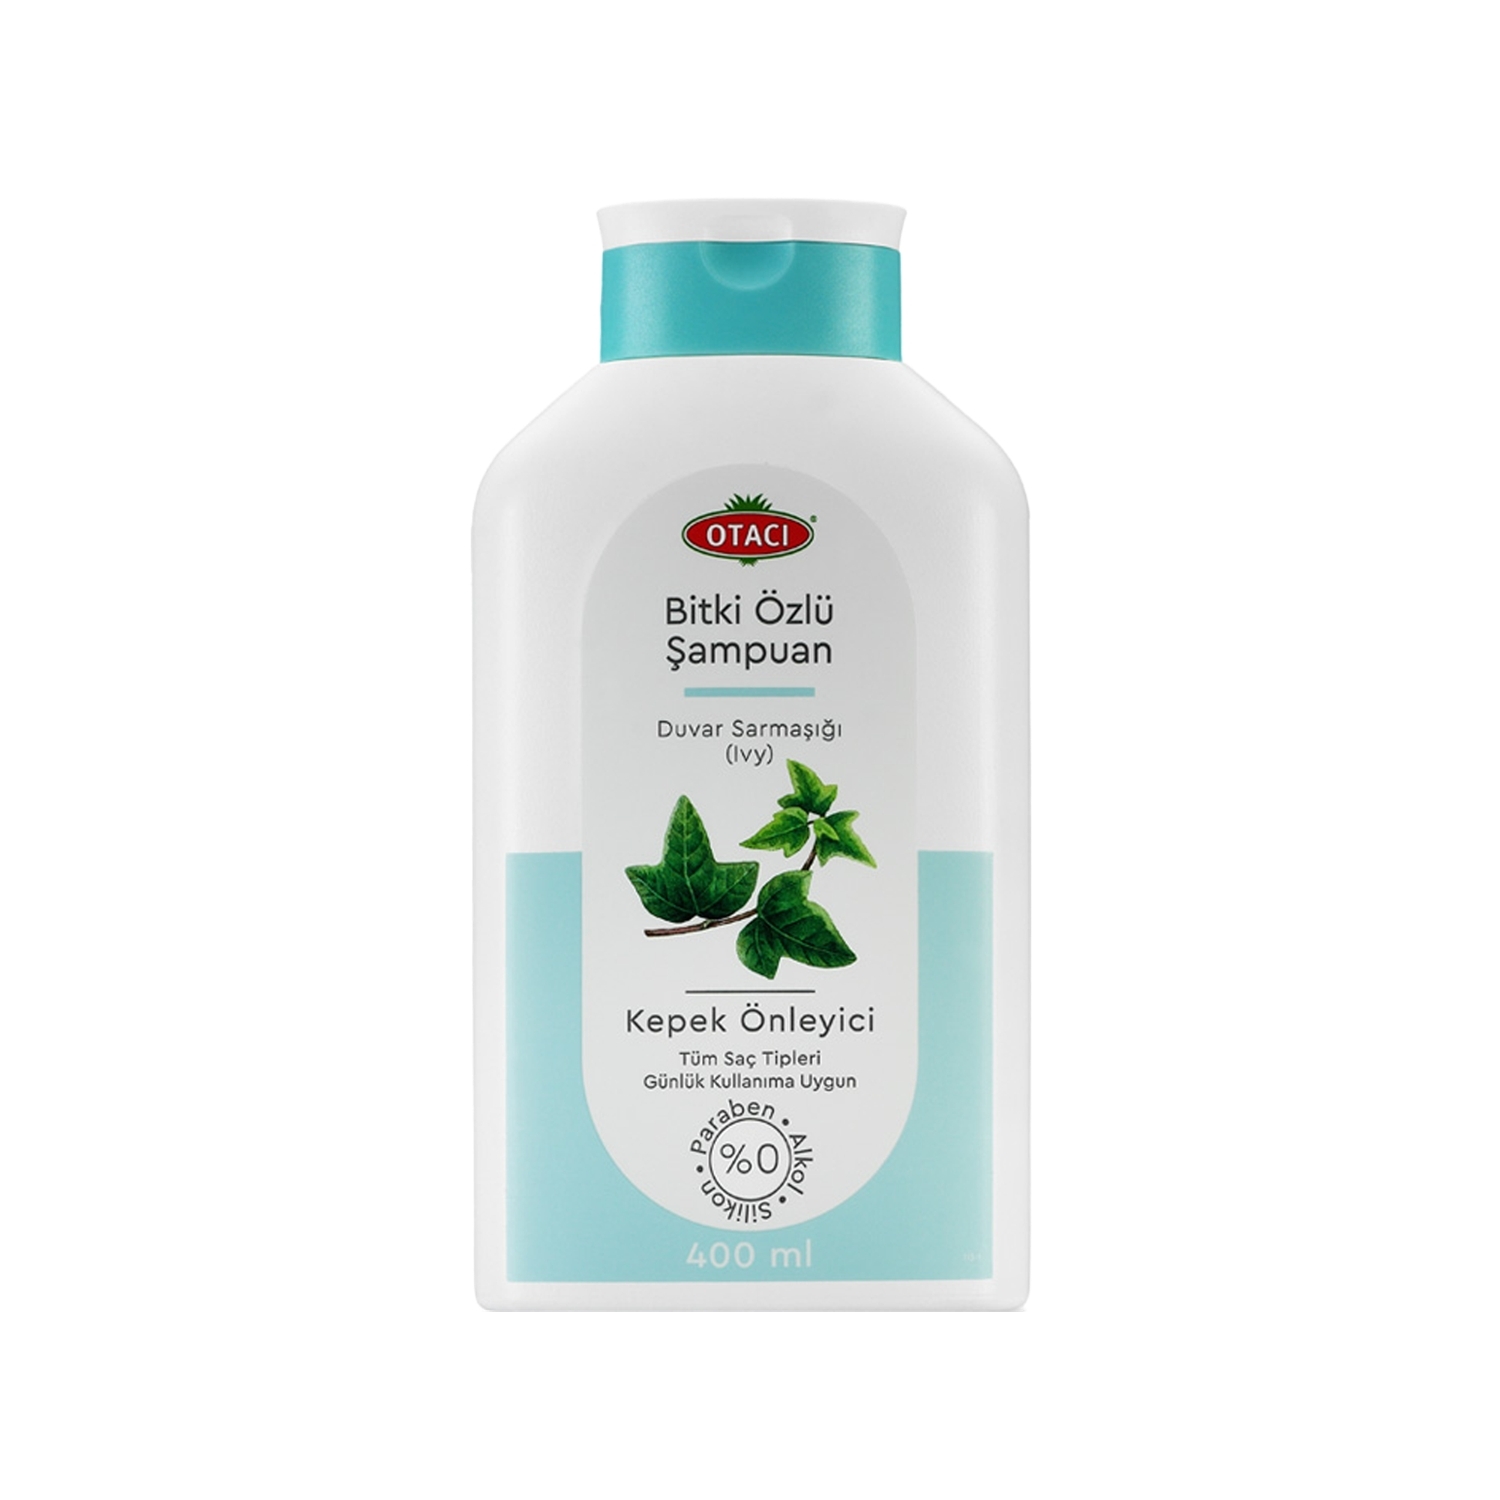 Otacı Bitki özlü Duvar Sarmaşığı Kepek Önleyici Şampuan 400 ml